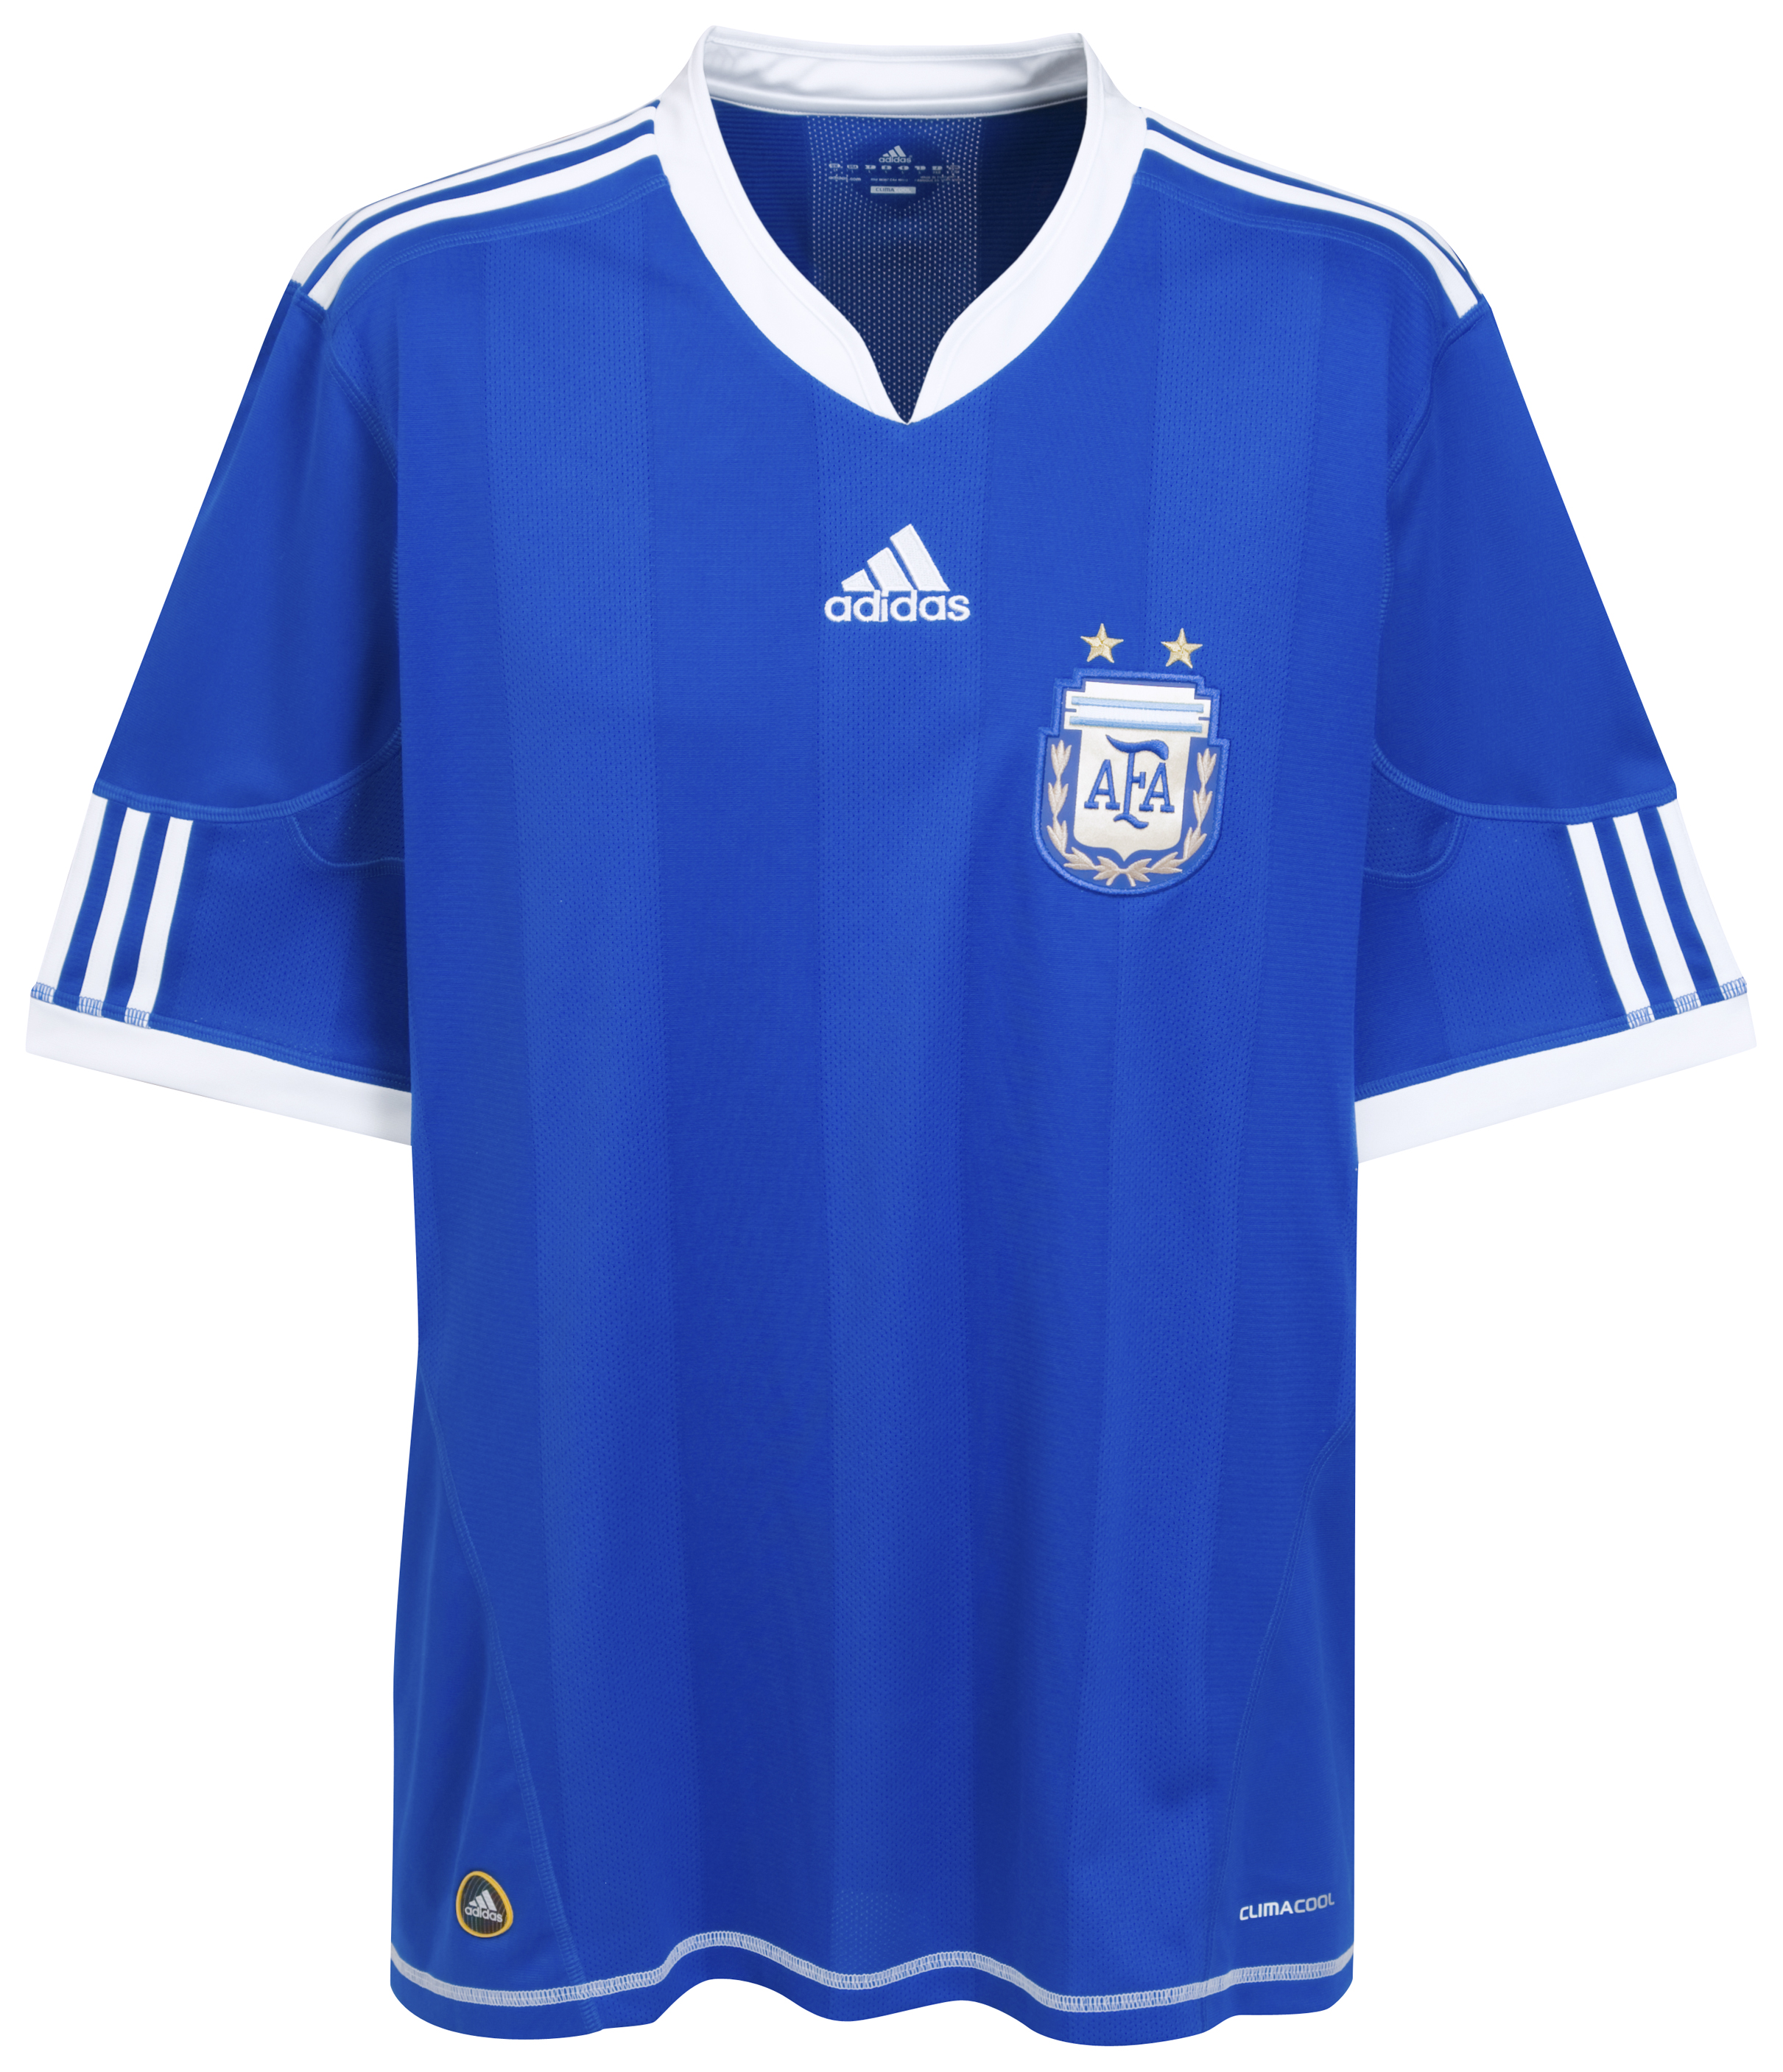 ملابس الفرق في كأس العالم  2010 Kb-66925